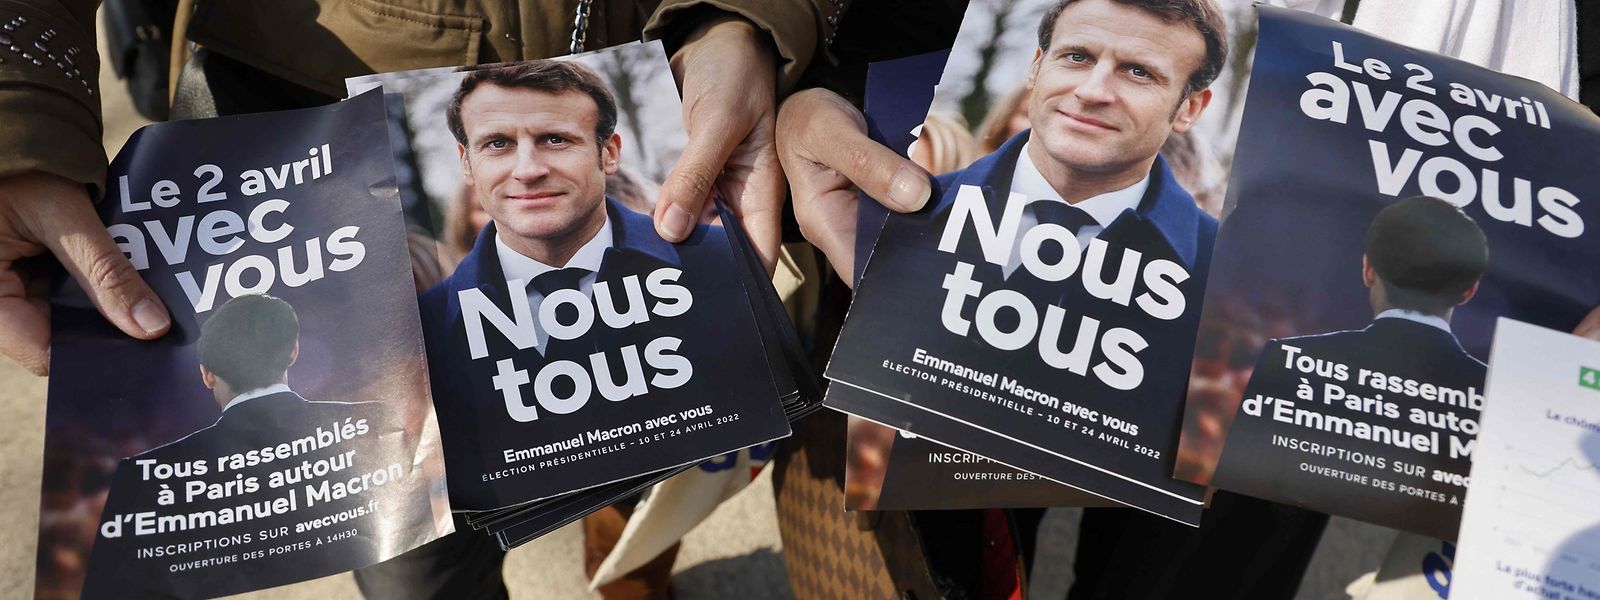 Die Broschüre des Kandidaten Emmanuel Macron der Partei La République en Marche.